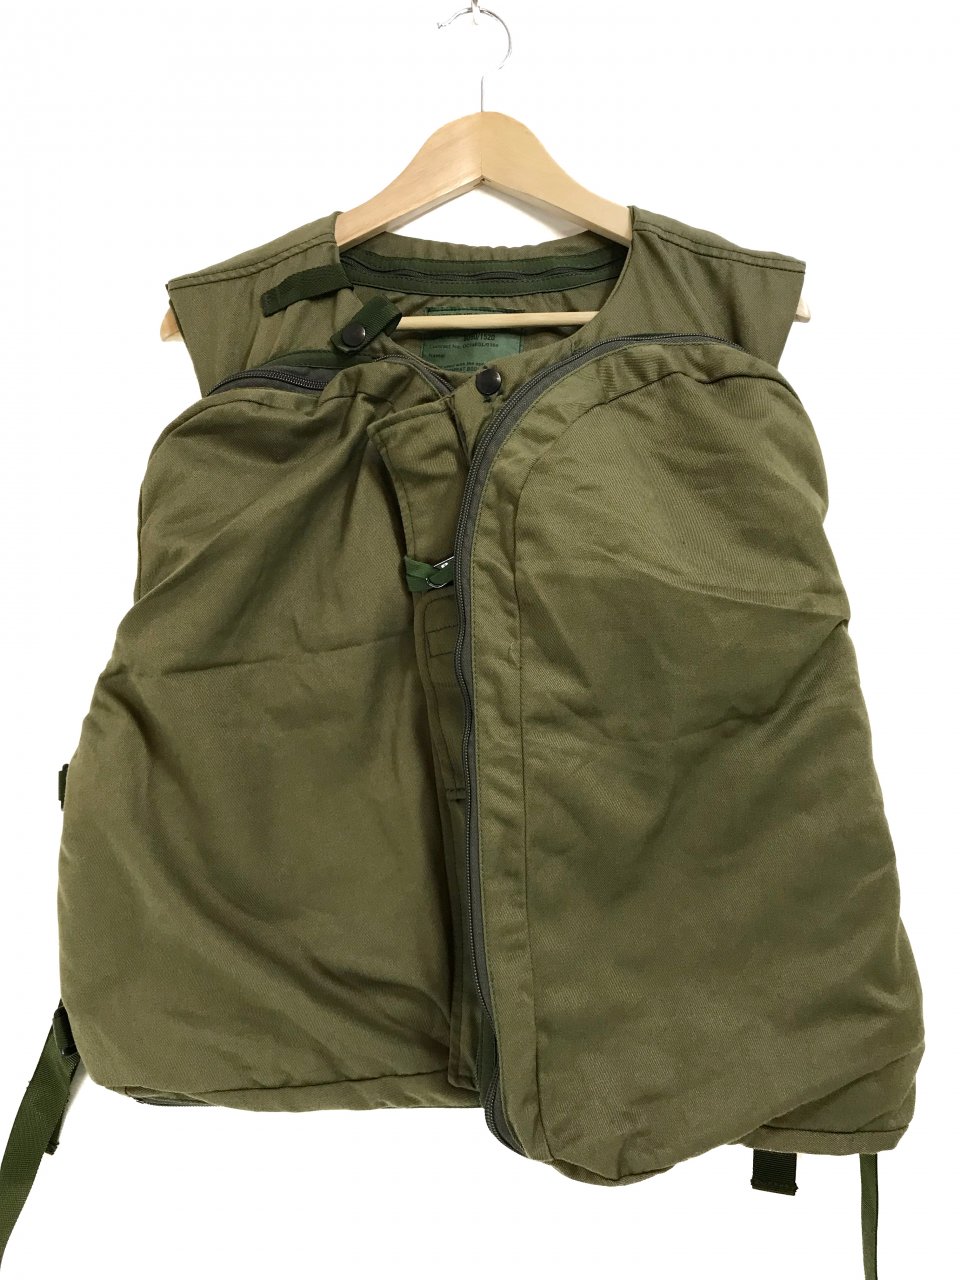 99年 UK Military AFV Combat Body Armor Vest #6 オリーブ 190/120